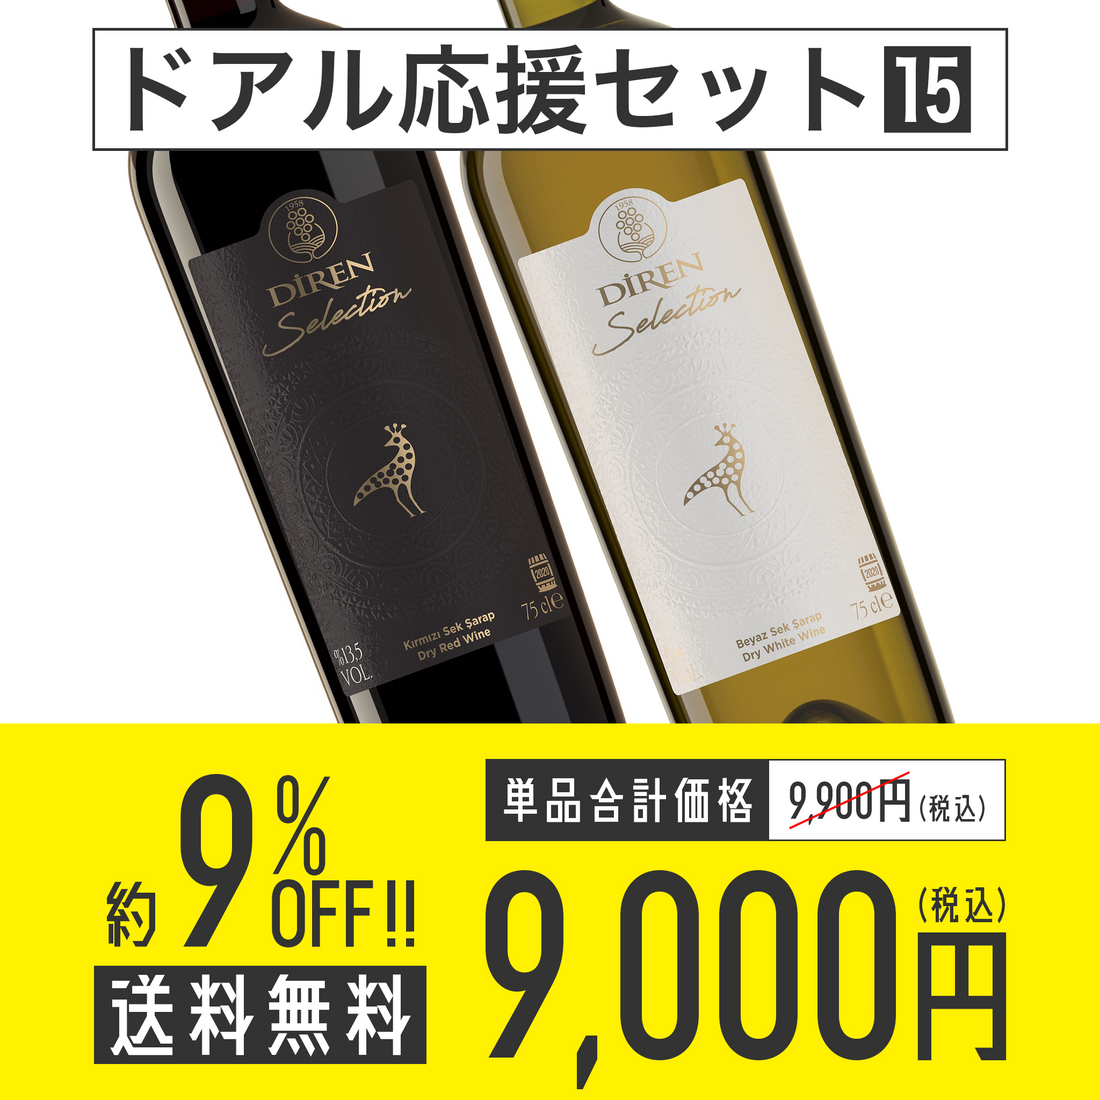 【送料無料】ドアル応援セット No.15 Diren Wine セレクション赤白 各1本セット